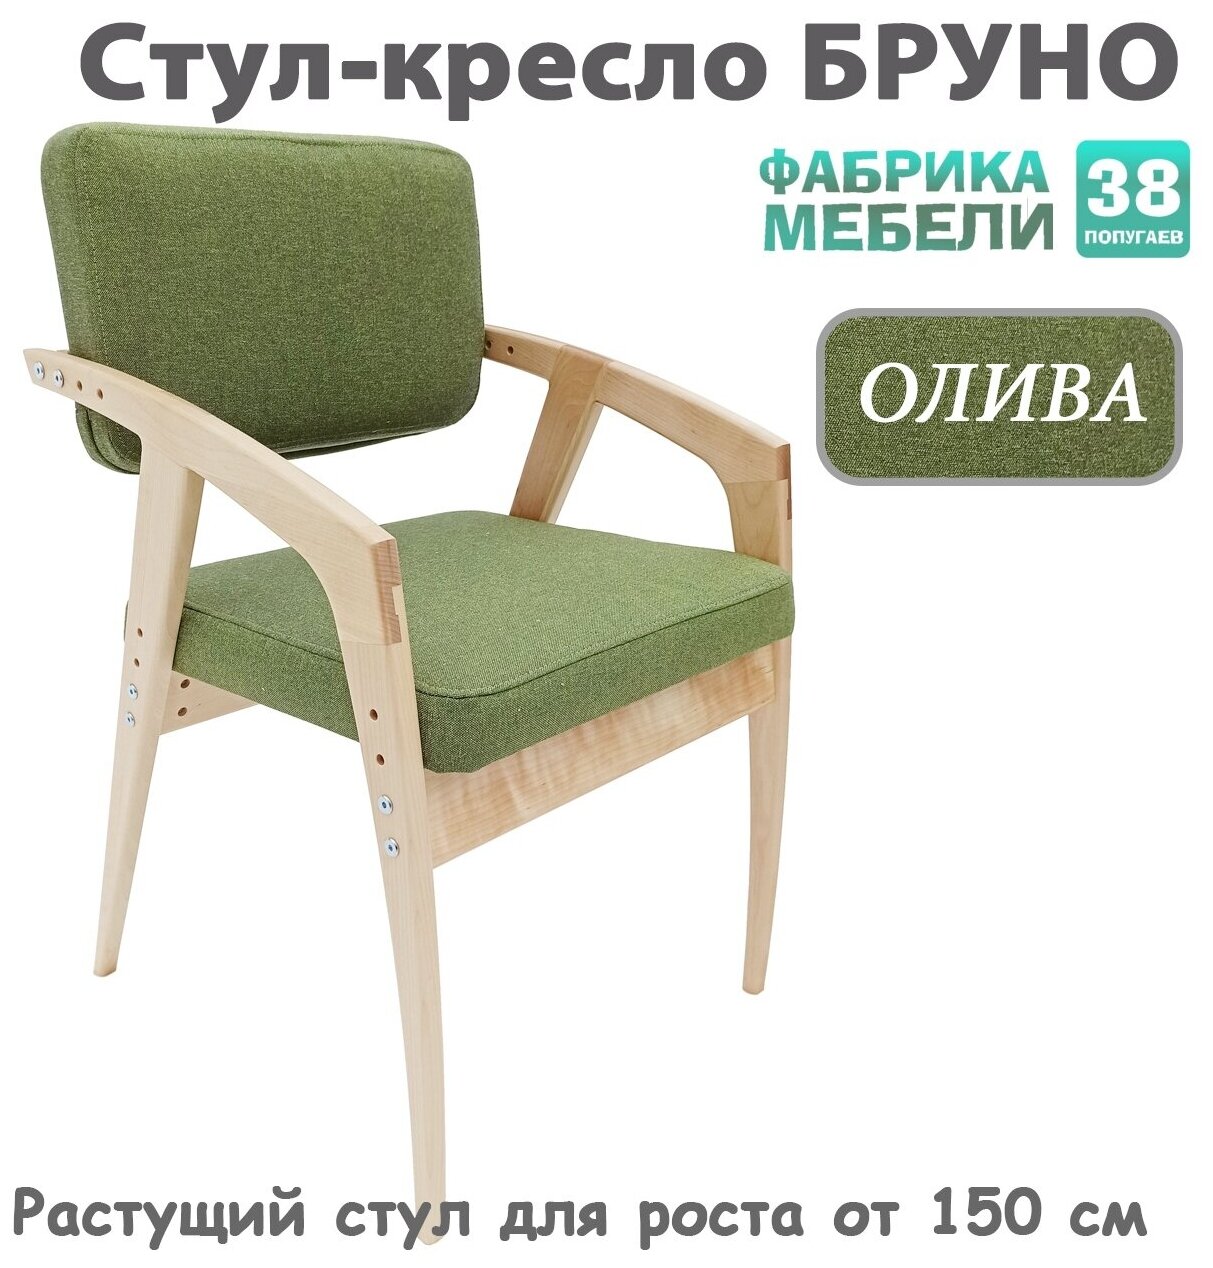 Растущий стул 38 Попугаев бруно с мягким сиденьем и спинкой, для роста от 150 см (ЛАК/Олива) - фотография № 1